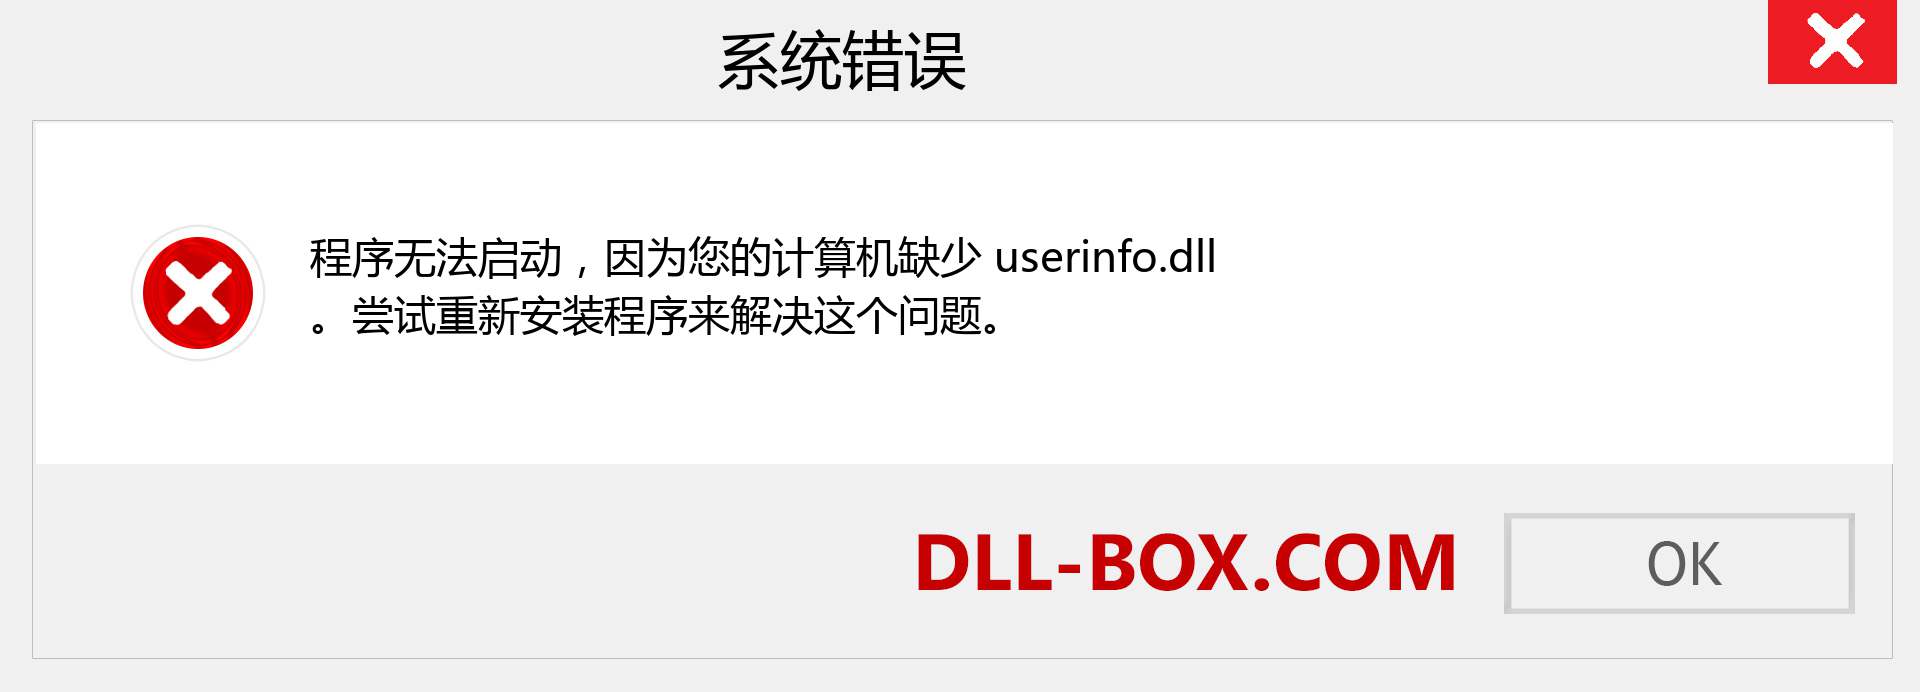 userinfo.dll 文件丢失？。 适用于 Windows 7、8、10 的下载 - 修复 Windows、照片、图像上的 userinfo dll 丢失错误